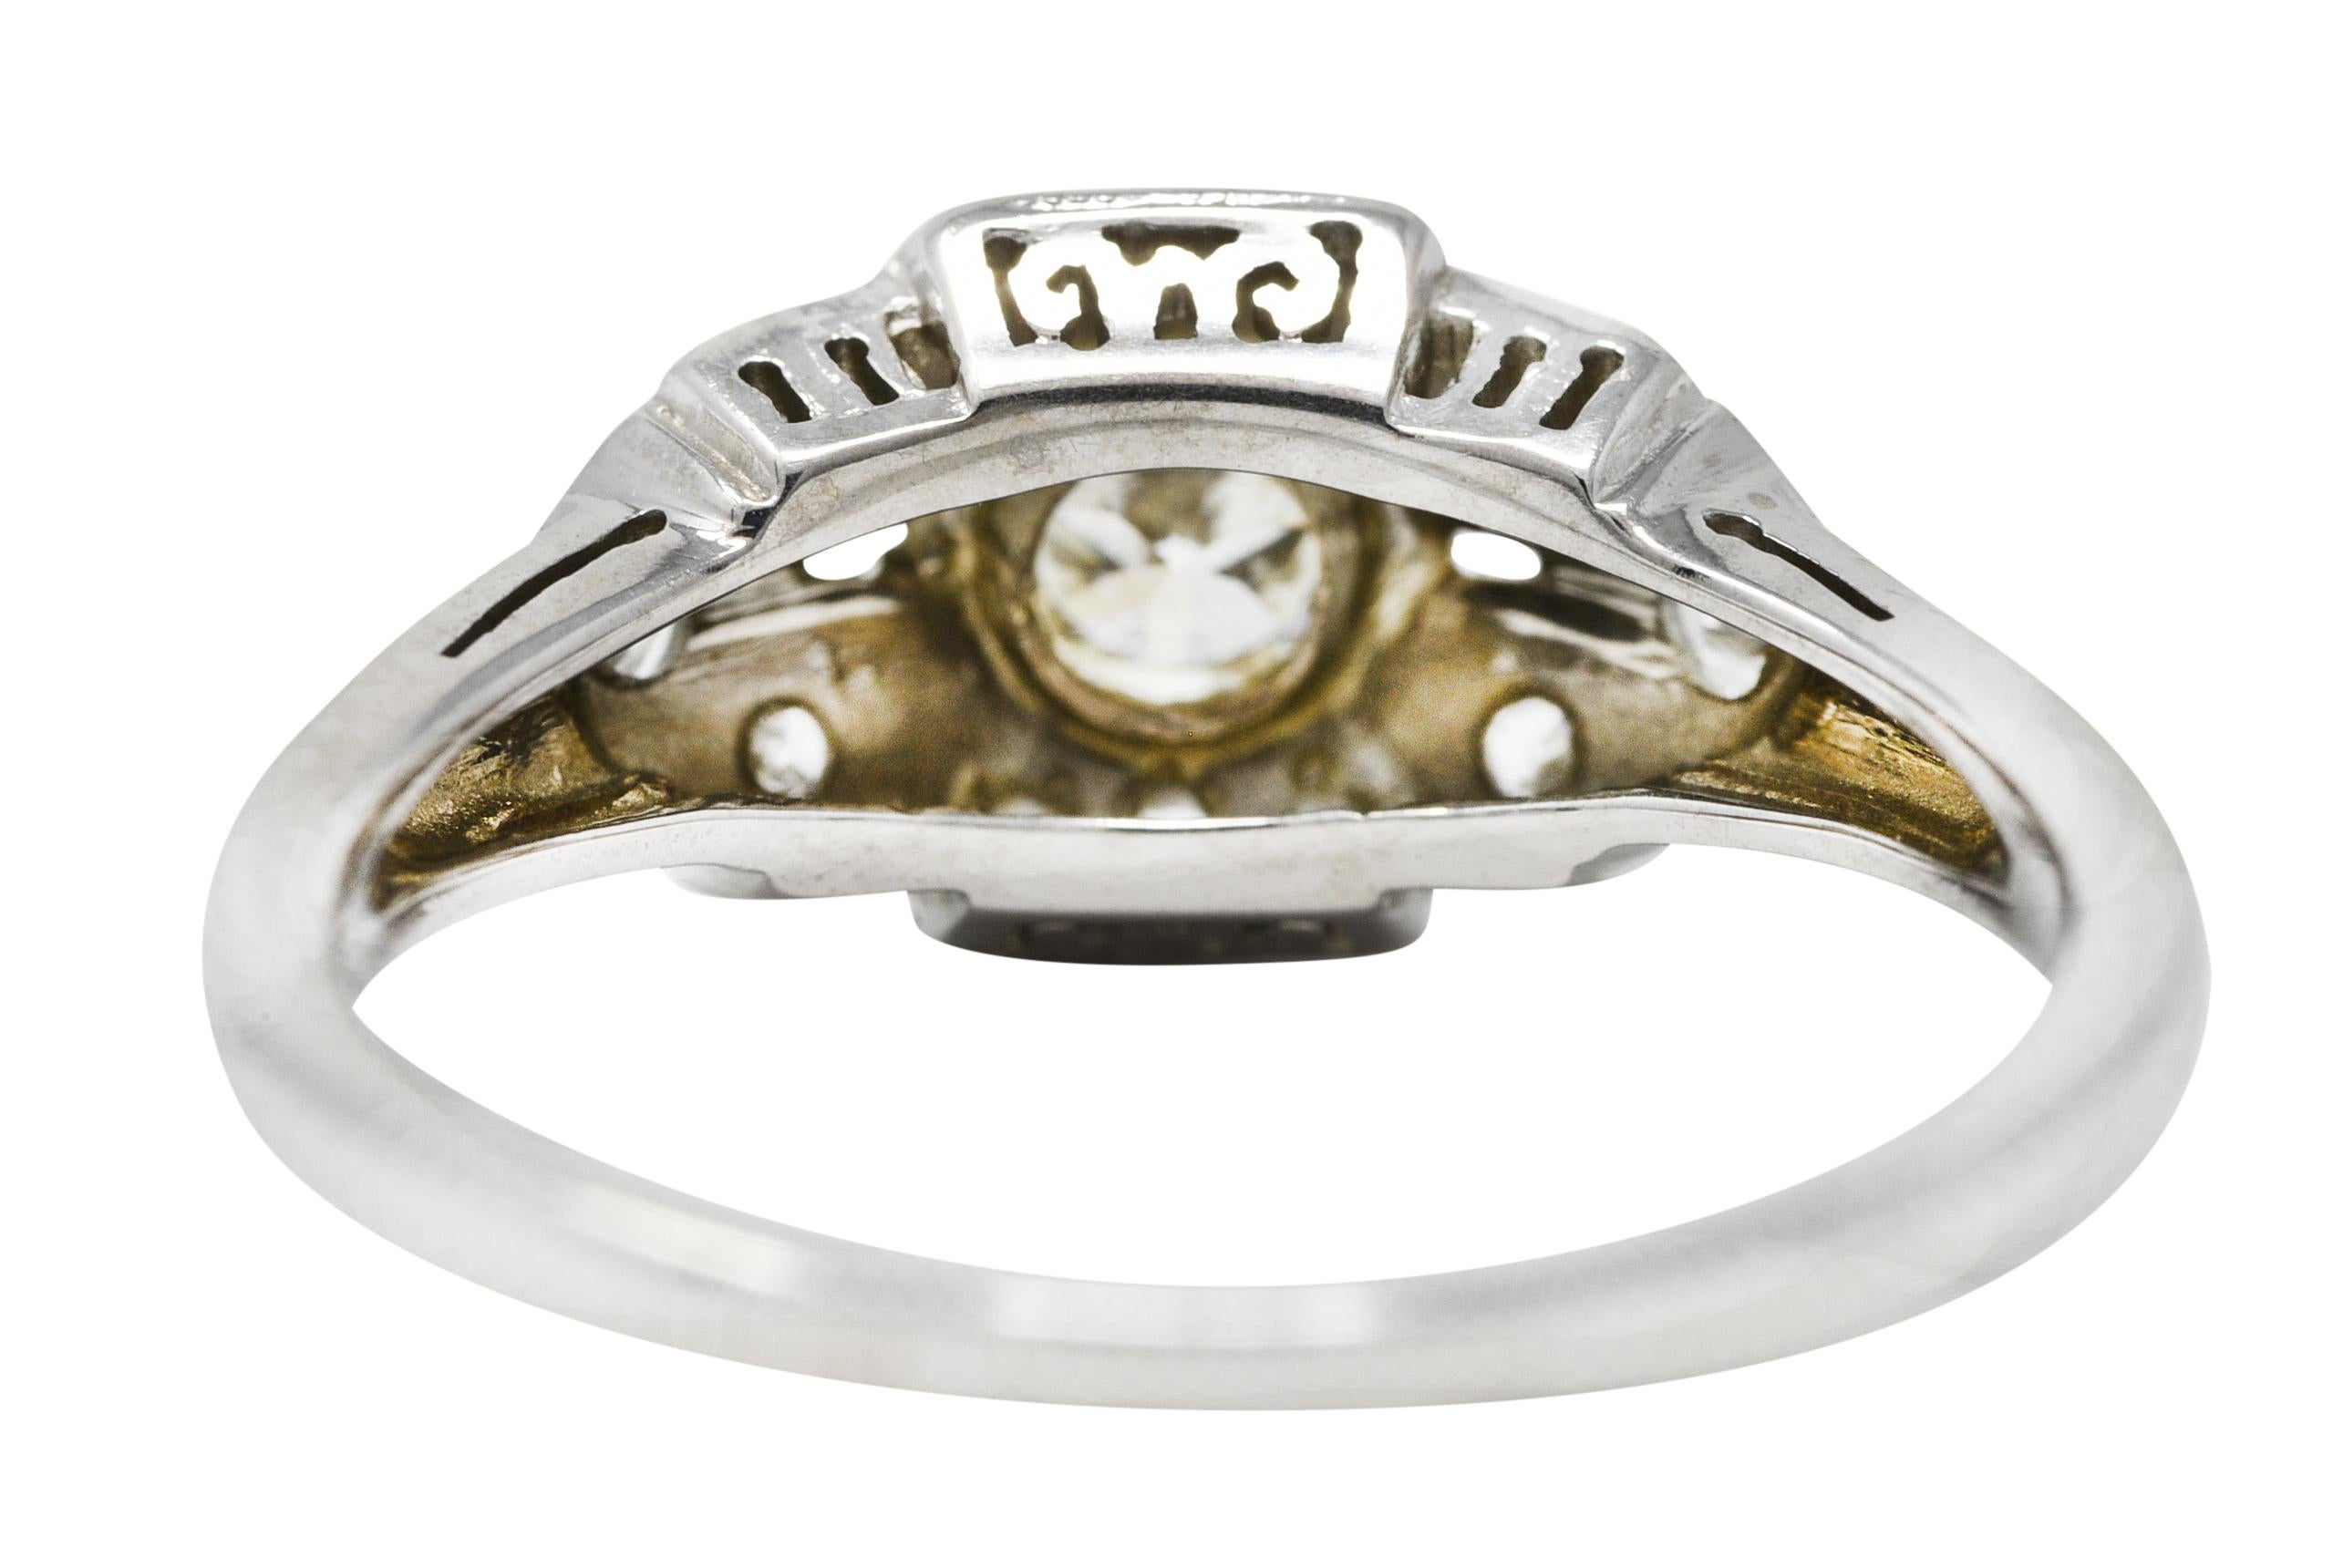 Men's Art Deco 0.25 Carat Old European Cut Diamond 18 Karat White Gold Engagement Ring